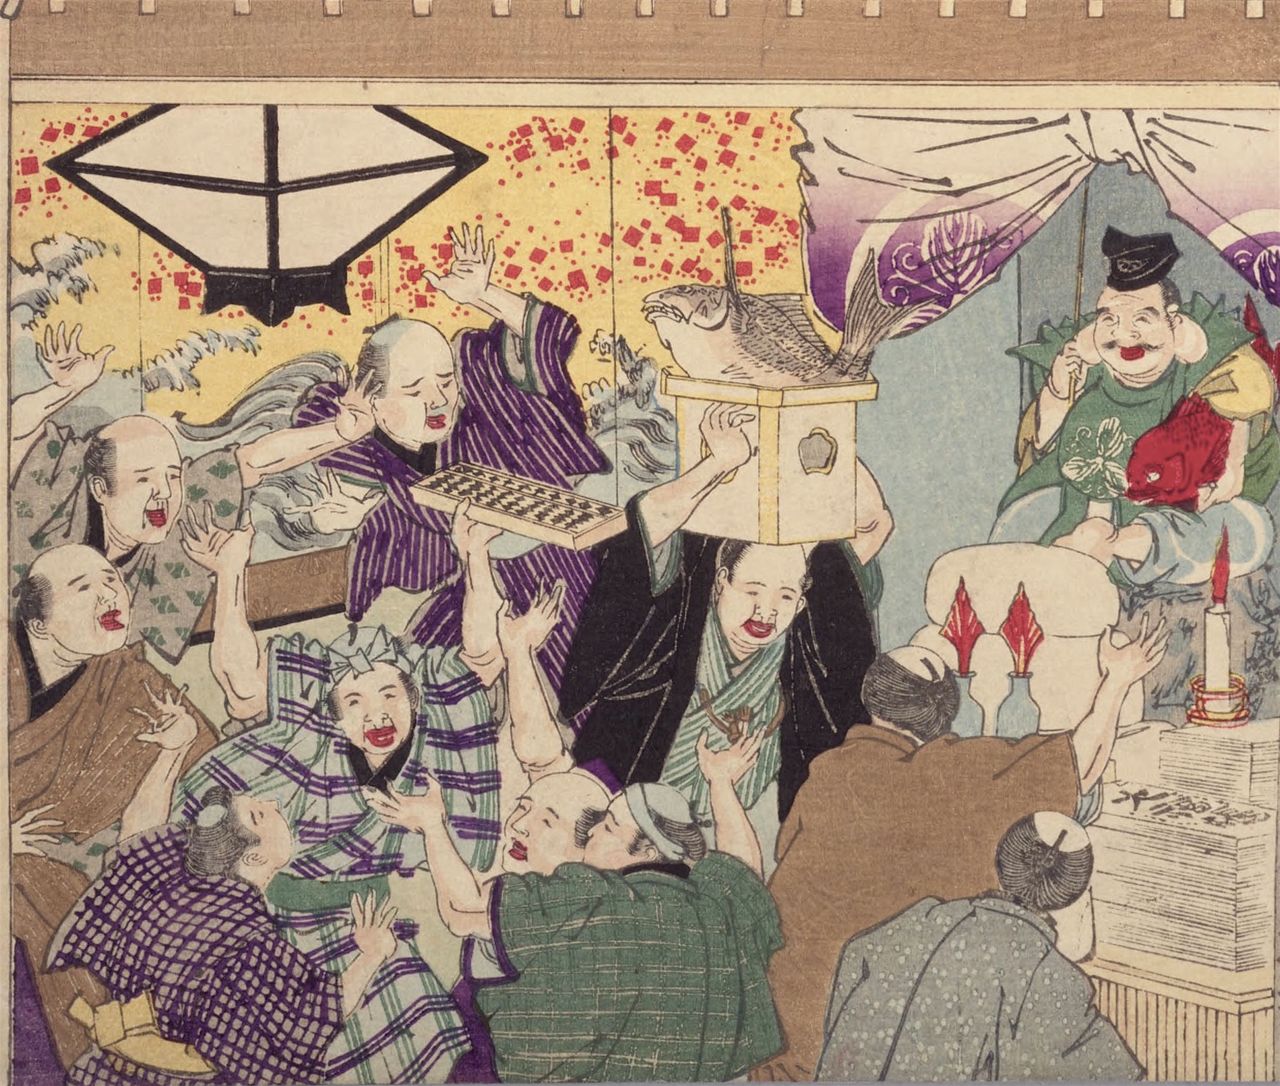 豪商が恵比寿講を開催している様子を描いた『江戸風俗十二ケ月の内 十月』。三宝台に鯛、算盤を持って騒ぐ商人、それを取り巻く客。国立国会図書館所蔵